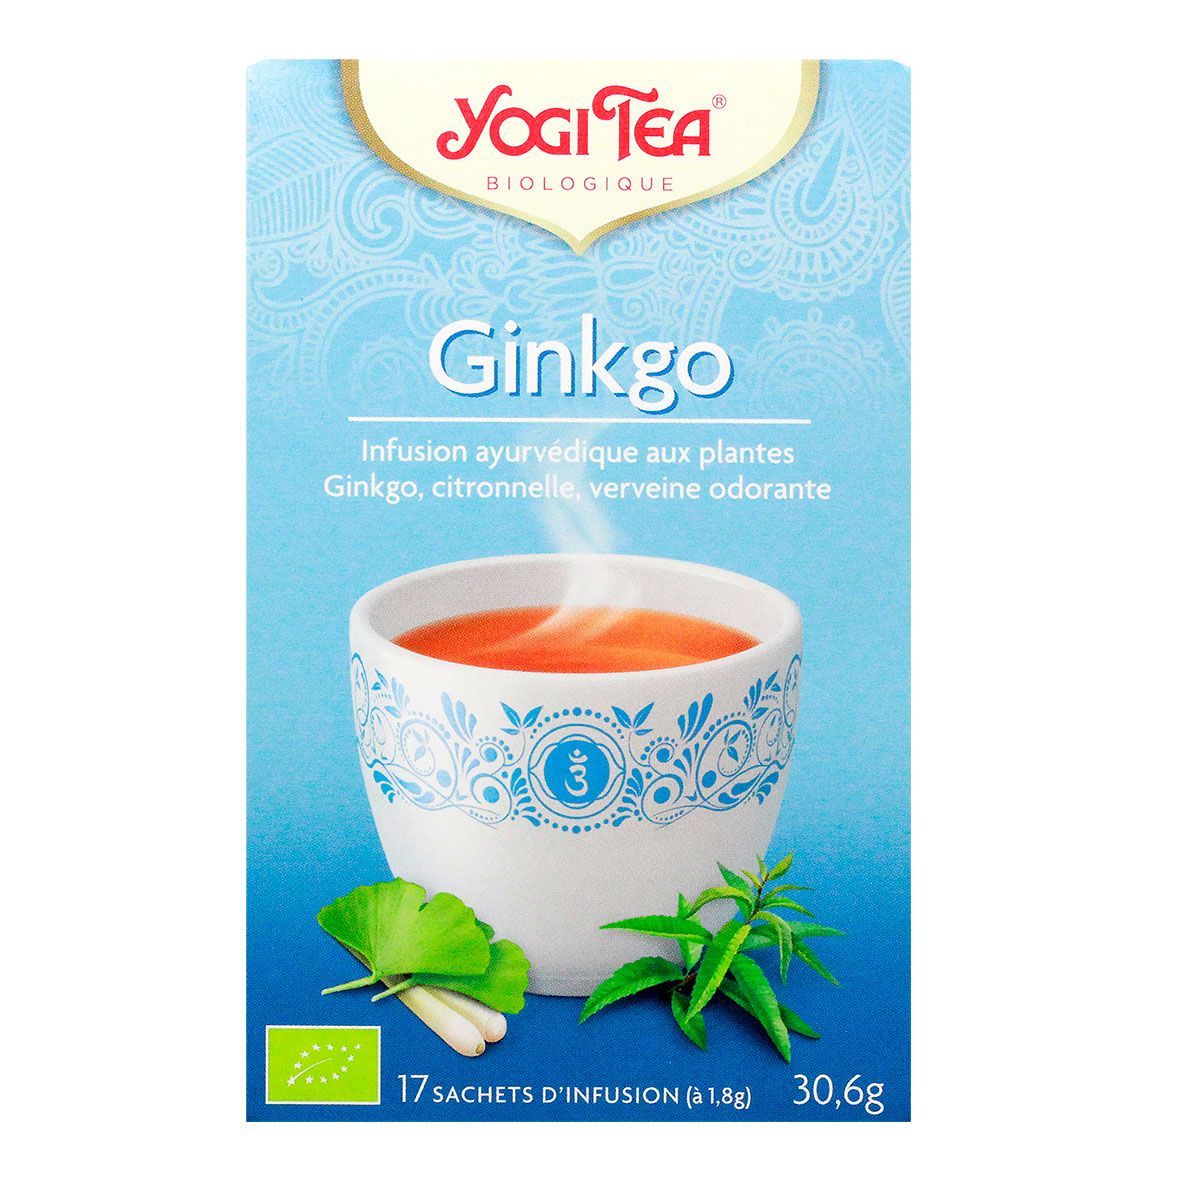 L'infusion ginkgo Yogi Tea contient des plantes telles que le ginkgo, la  citronnelle et la verveine